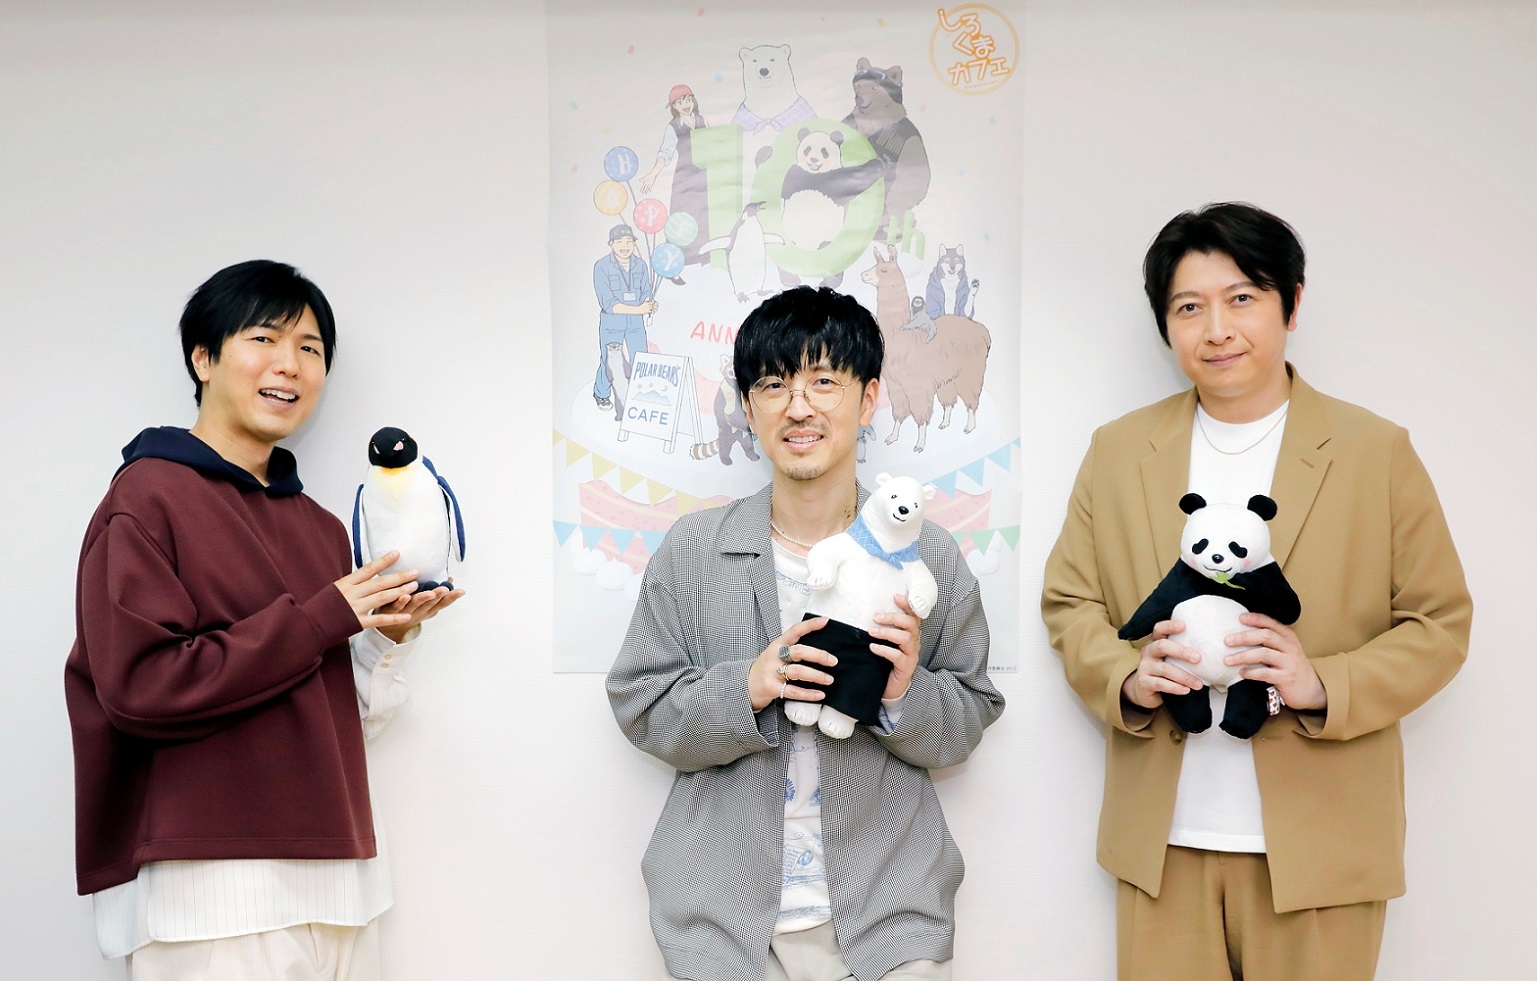 左から、櫻井孝宏、神谷浩史、小野大輔 （C）ヒガアロハ／しろくまカフェ製作委員会 2012